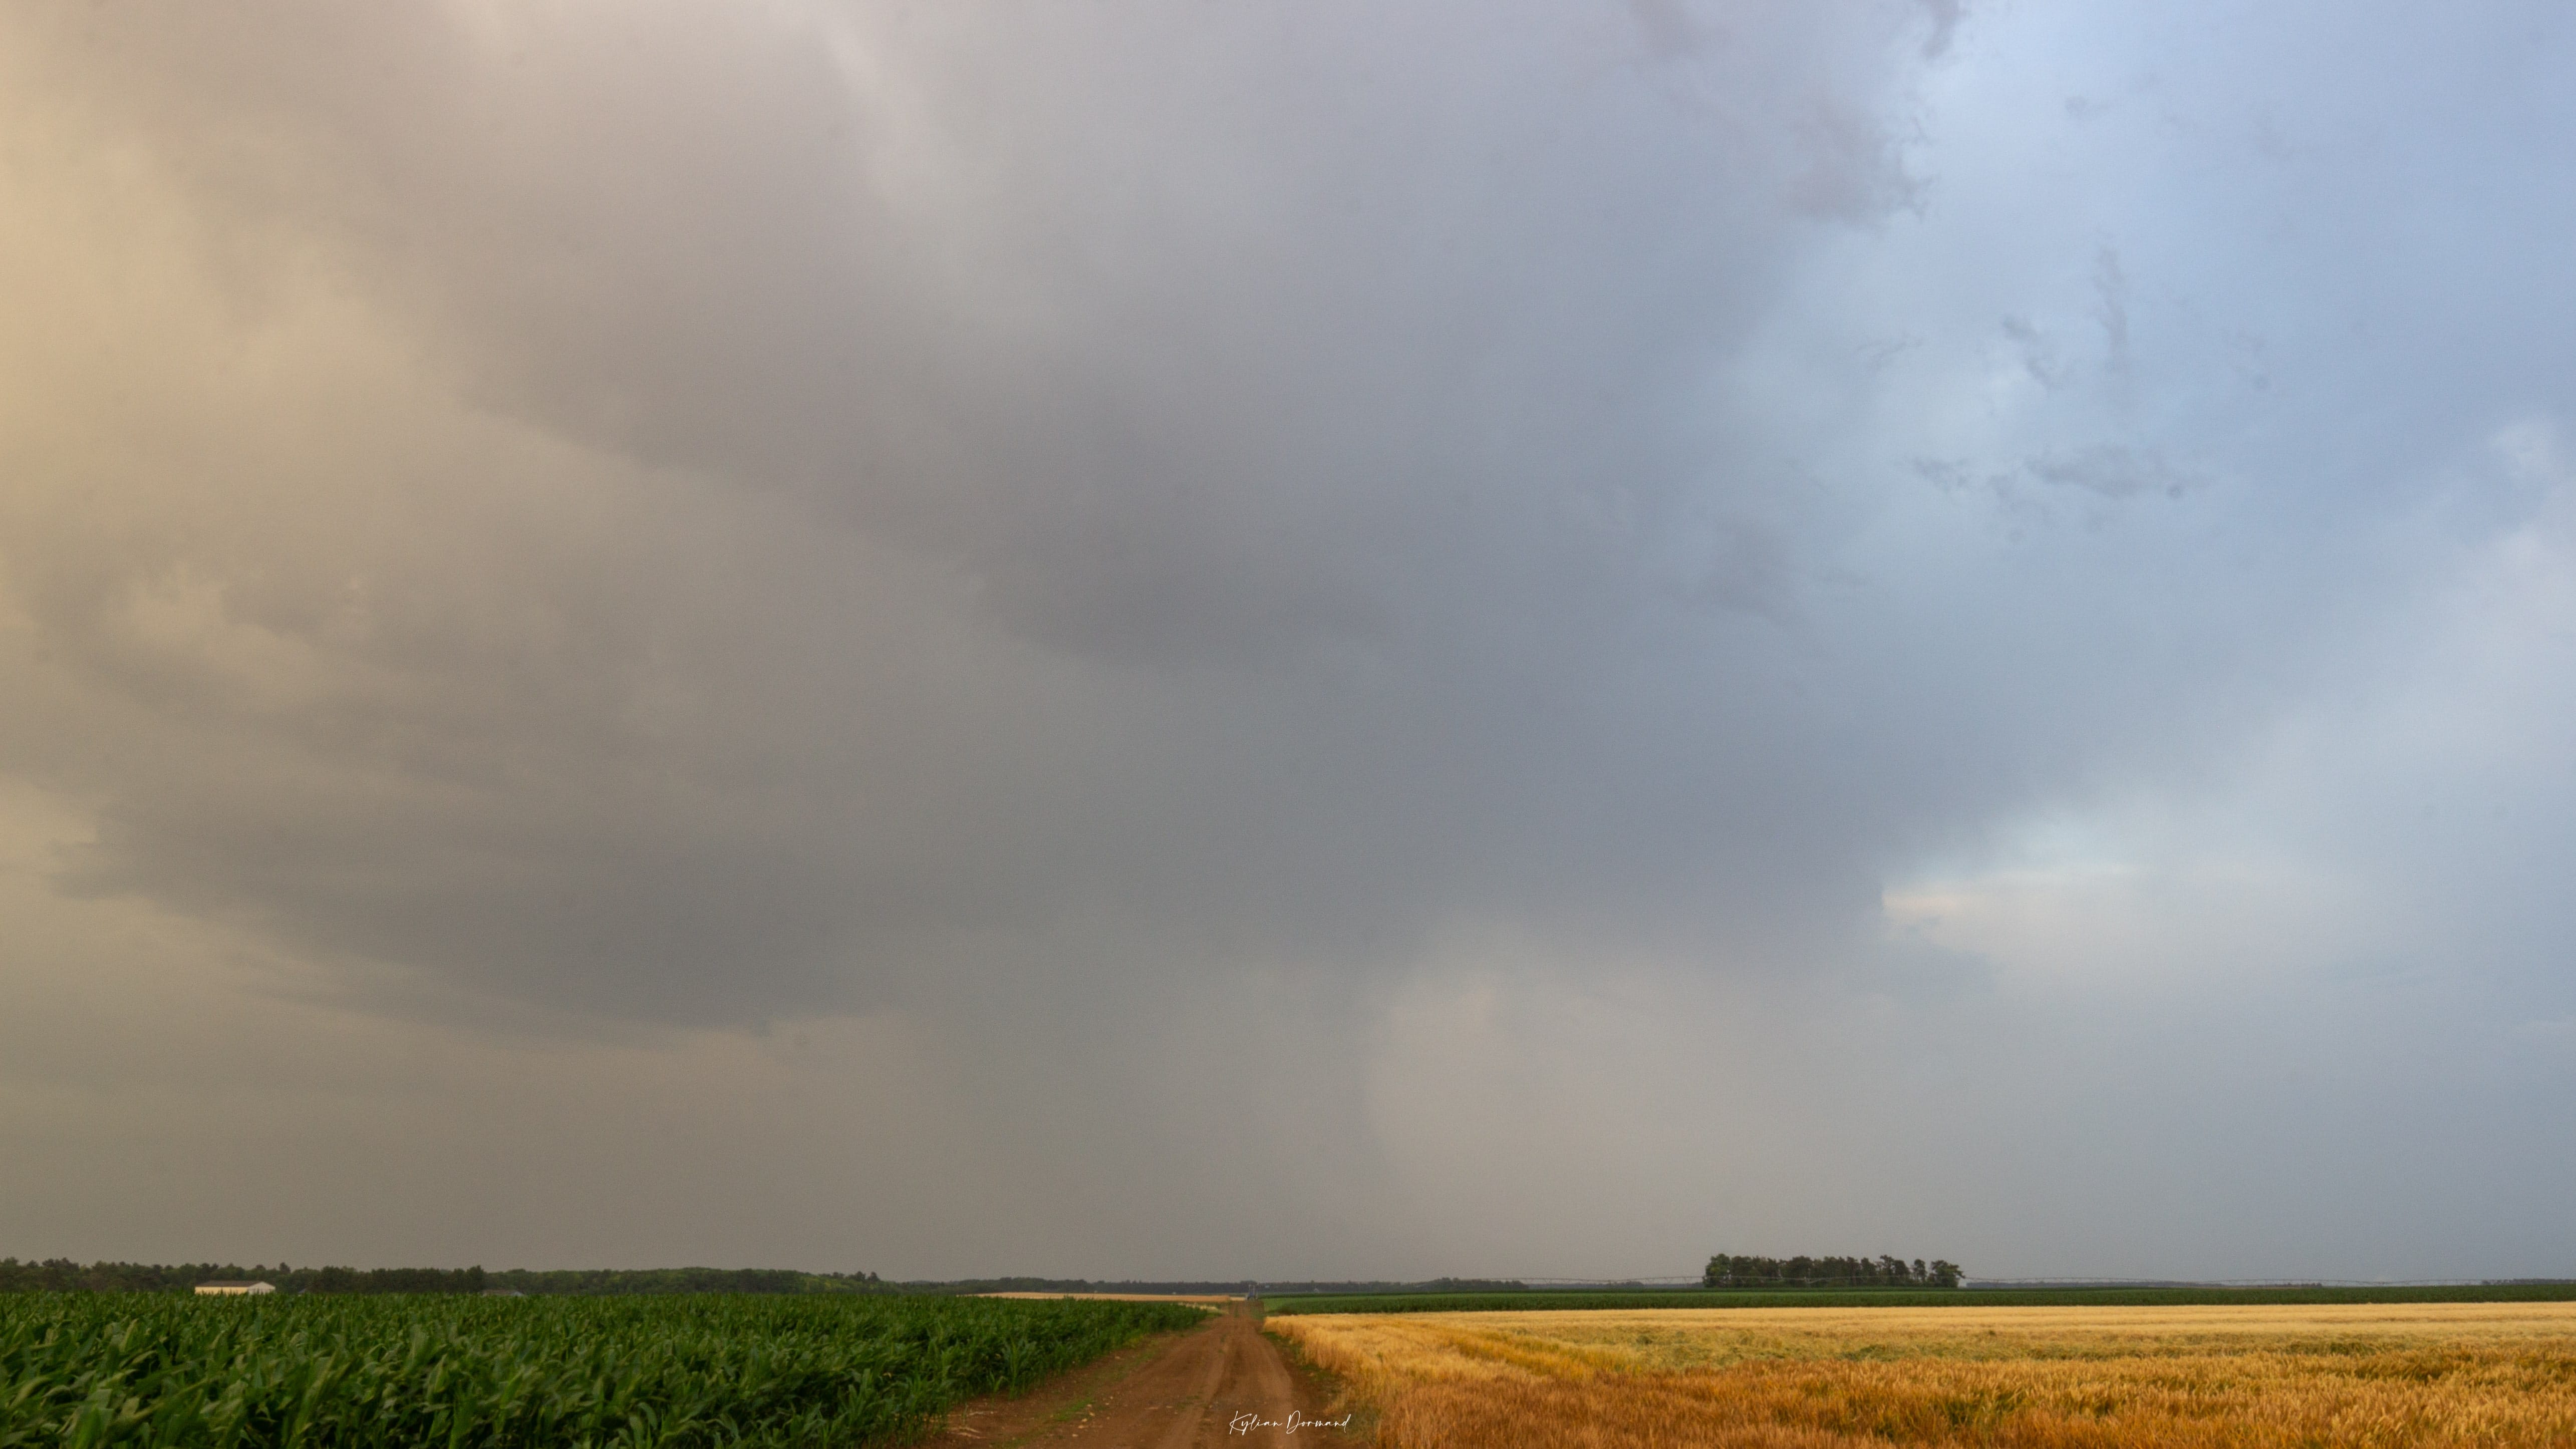 Ambiance orageuse, depuis Epieds-en-Beauce - 19/06/2022 21:40 - Kylian Dormand